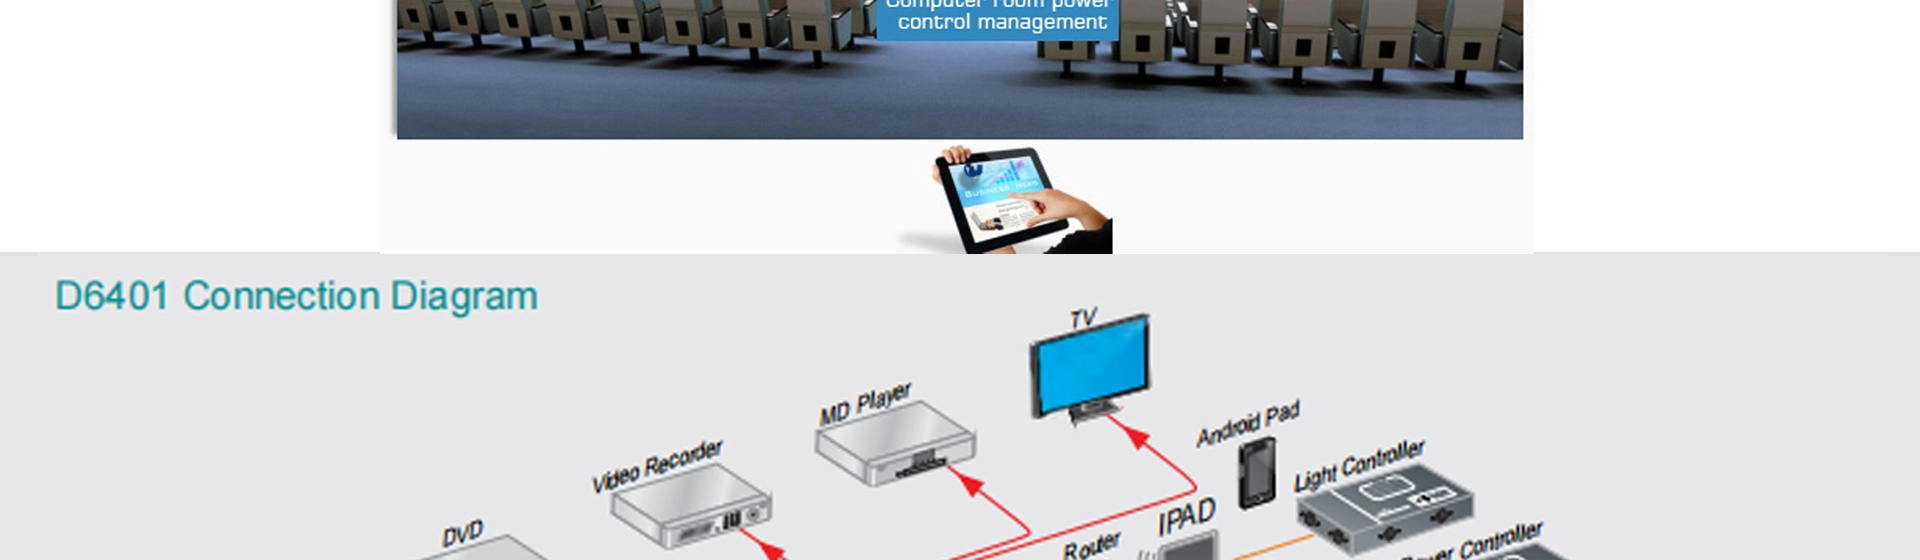 Host di controllo centrale multimediale di rete programmabile